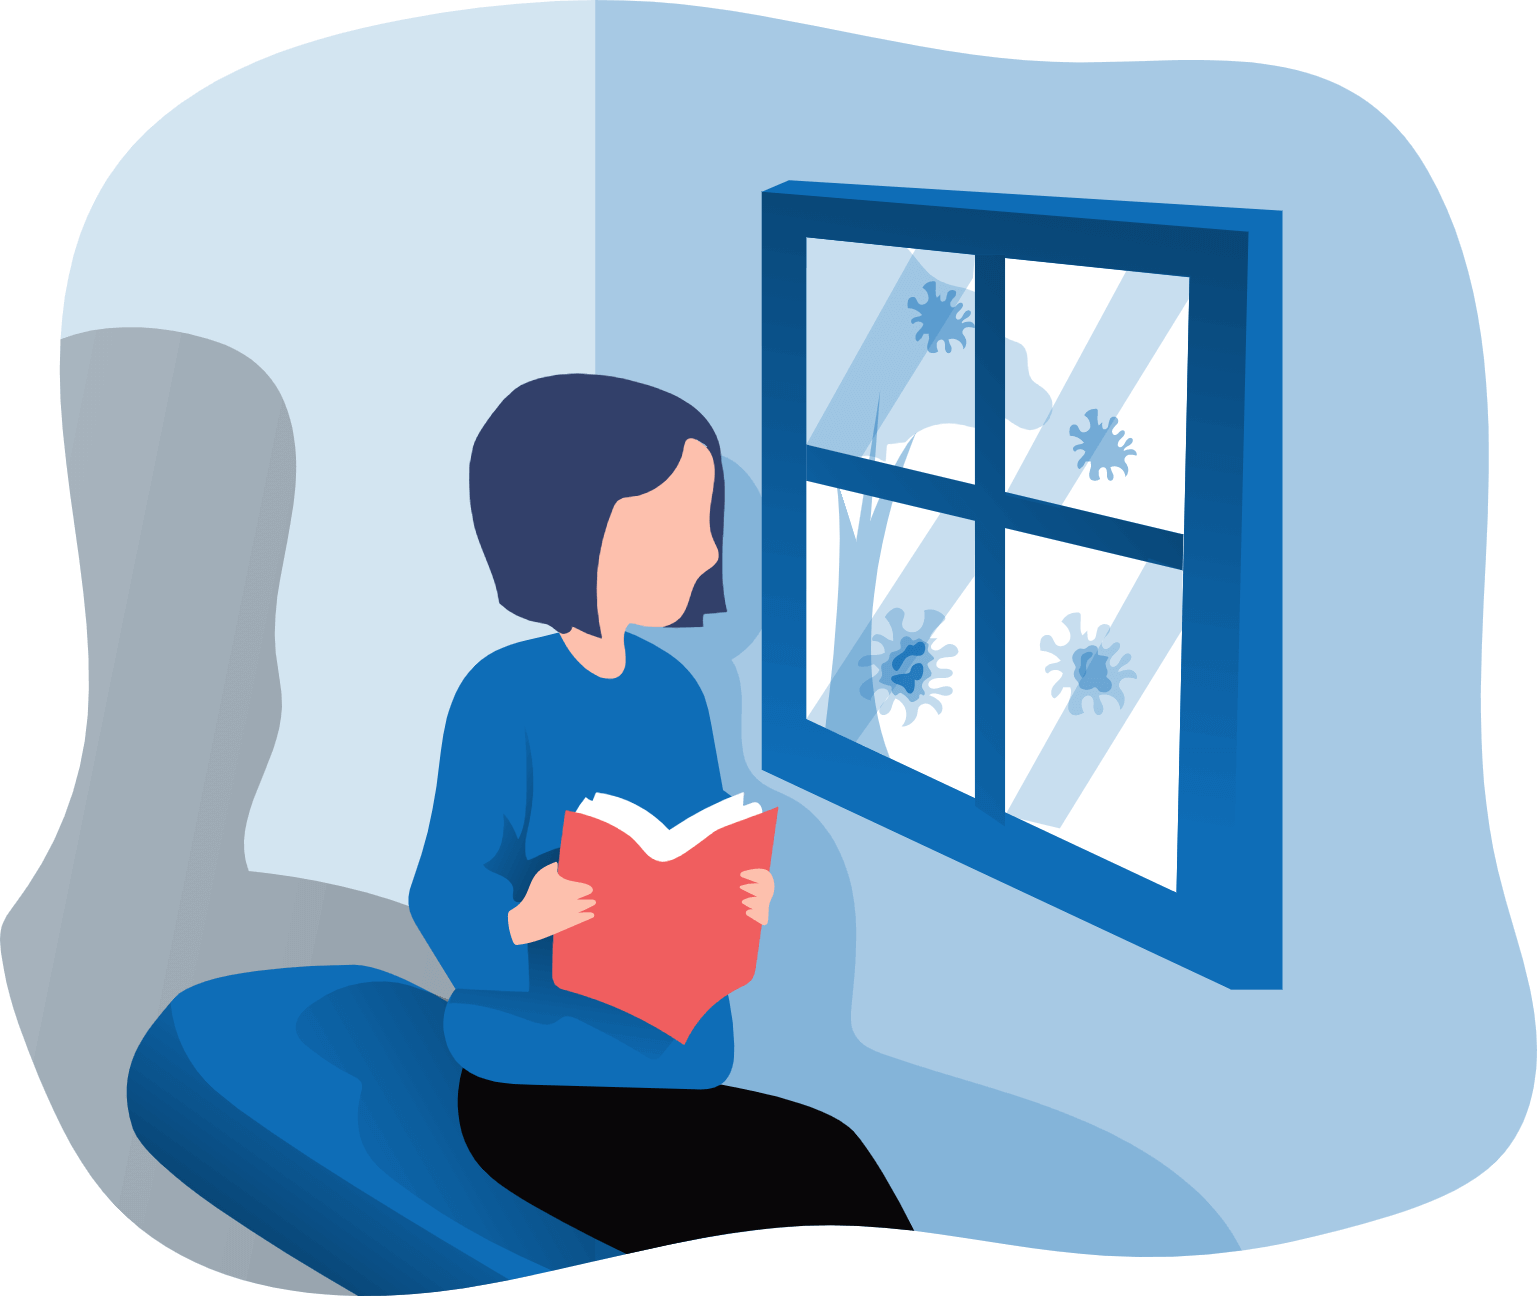 אישה מונפשת קוראת ספר אדום ומביטה מהחלון